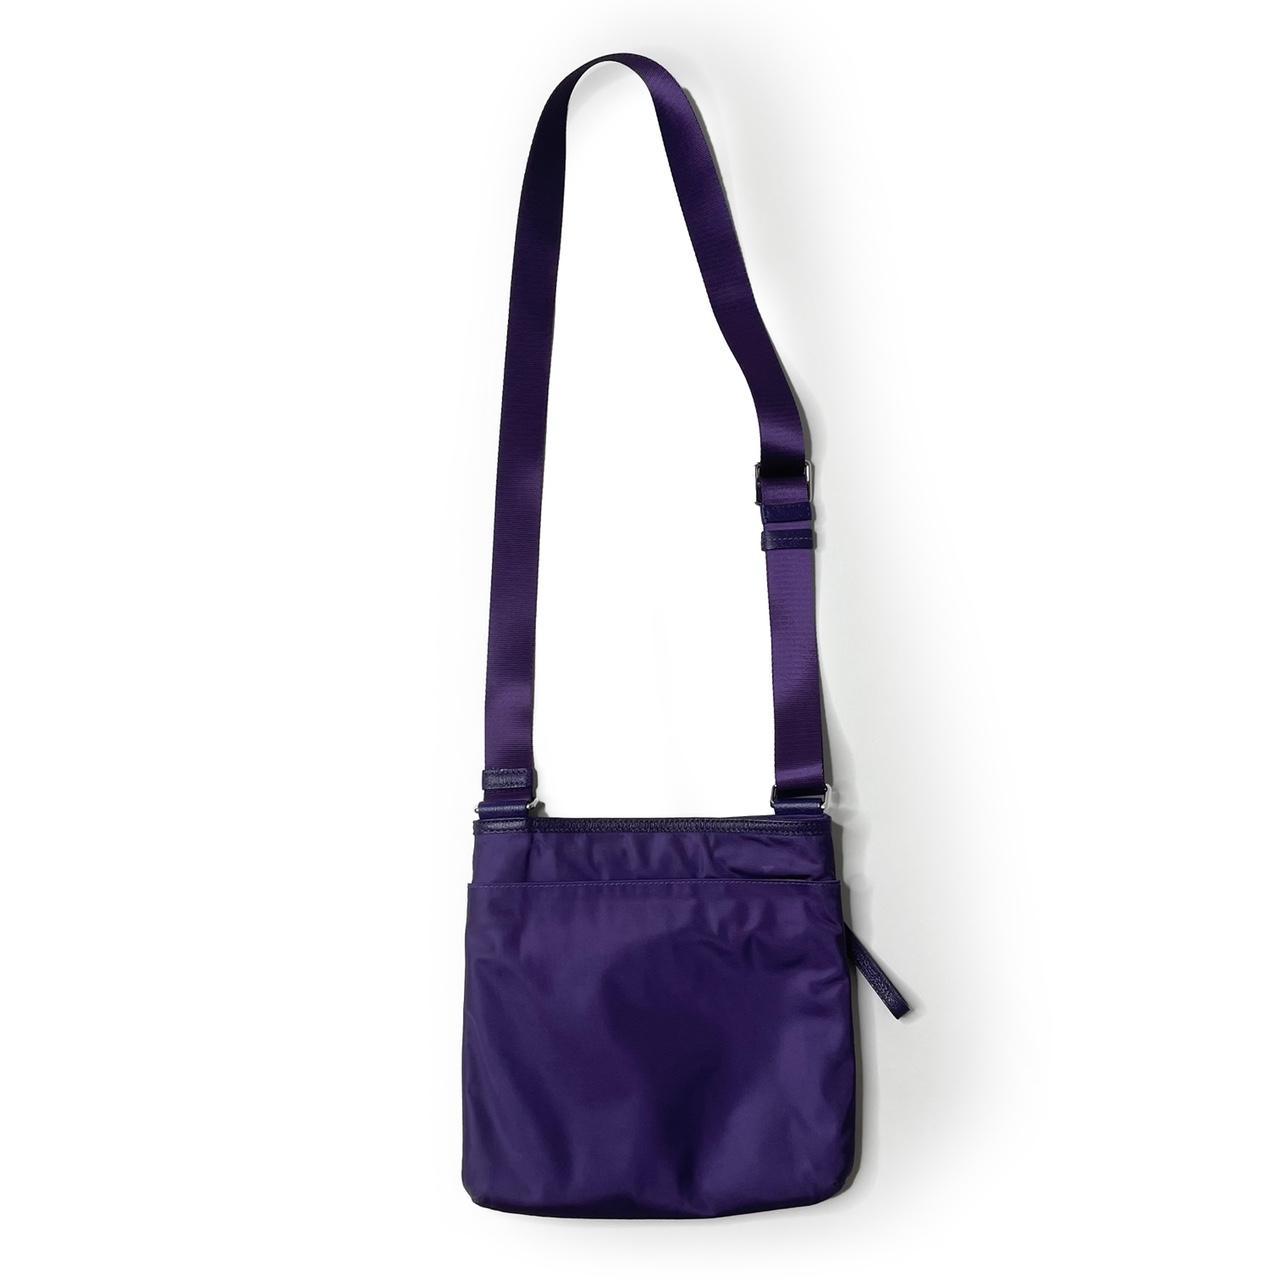 Product Image 3 - Vintage Purple Crossbody Tumi Bag

Details:
Vintage